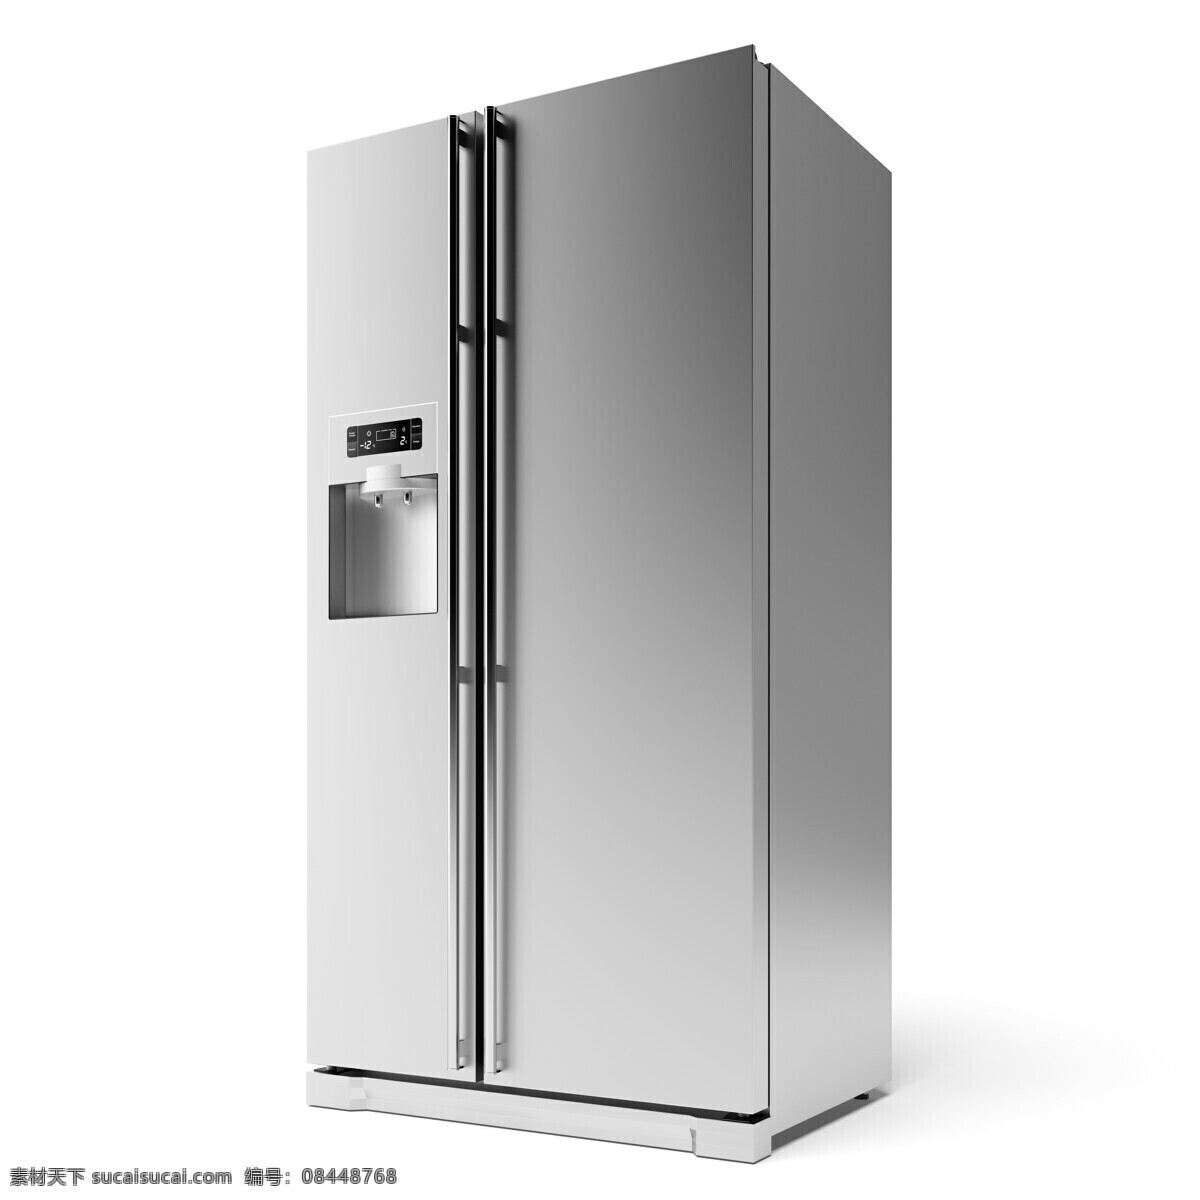 精美 高清 家用电器 冰箱 厨房 电器 生活电器 大家电 生活百科 数码家电